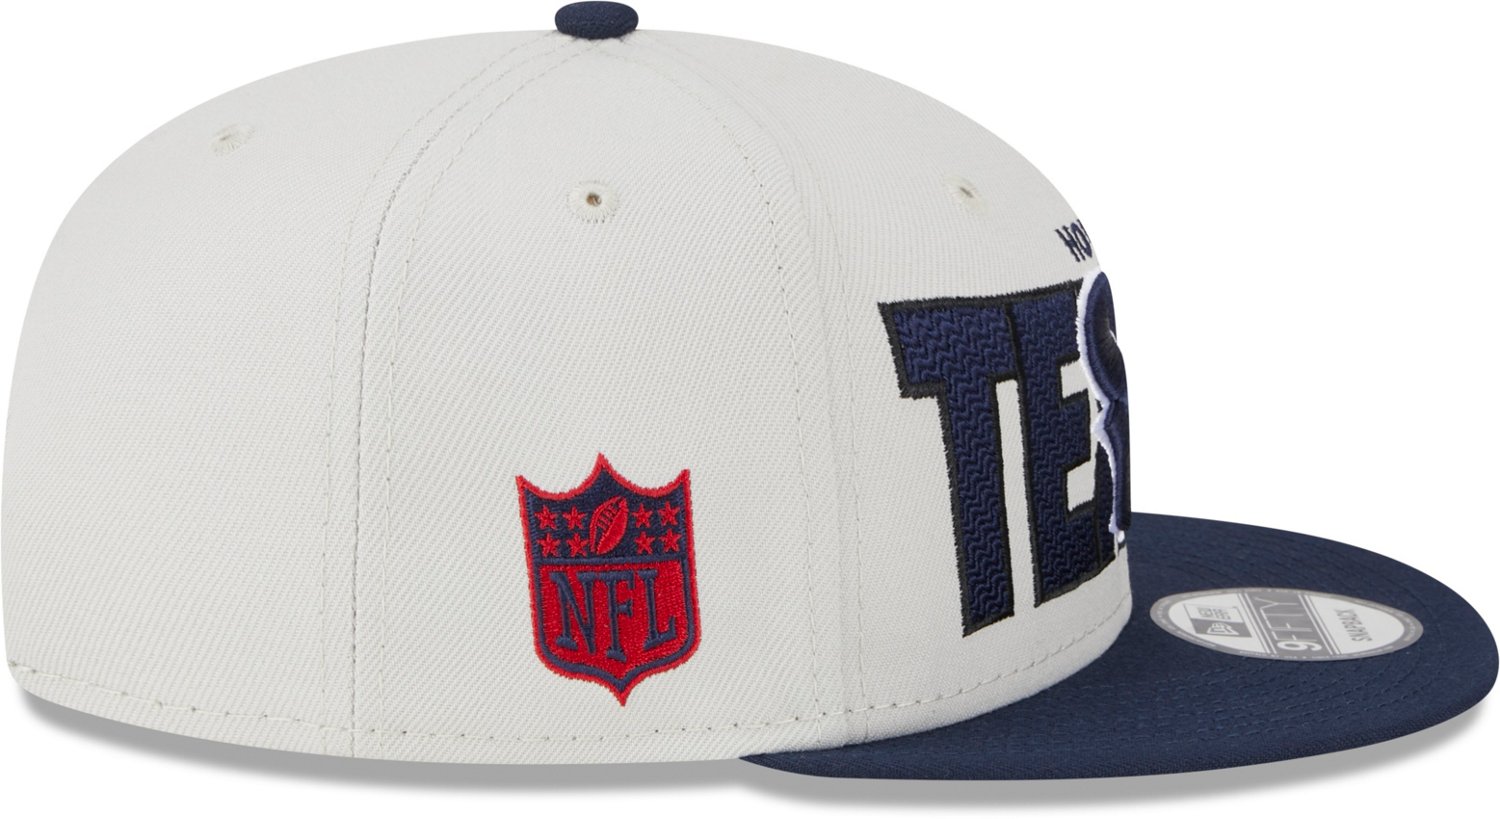 Houston Texans 2015 NFL DRAFT FLEX Hat by New Era